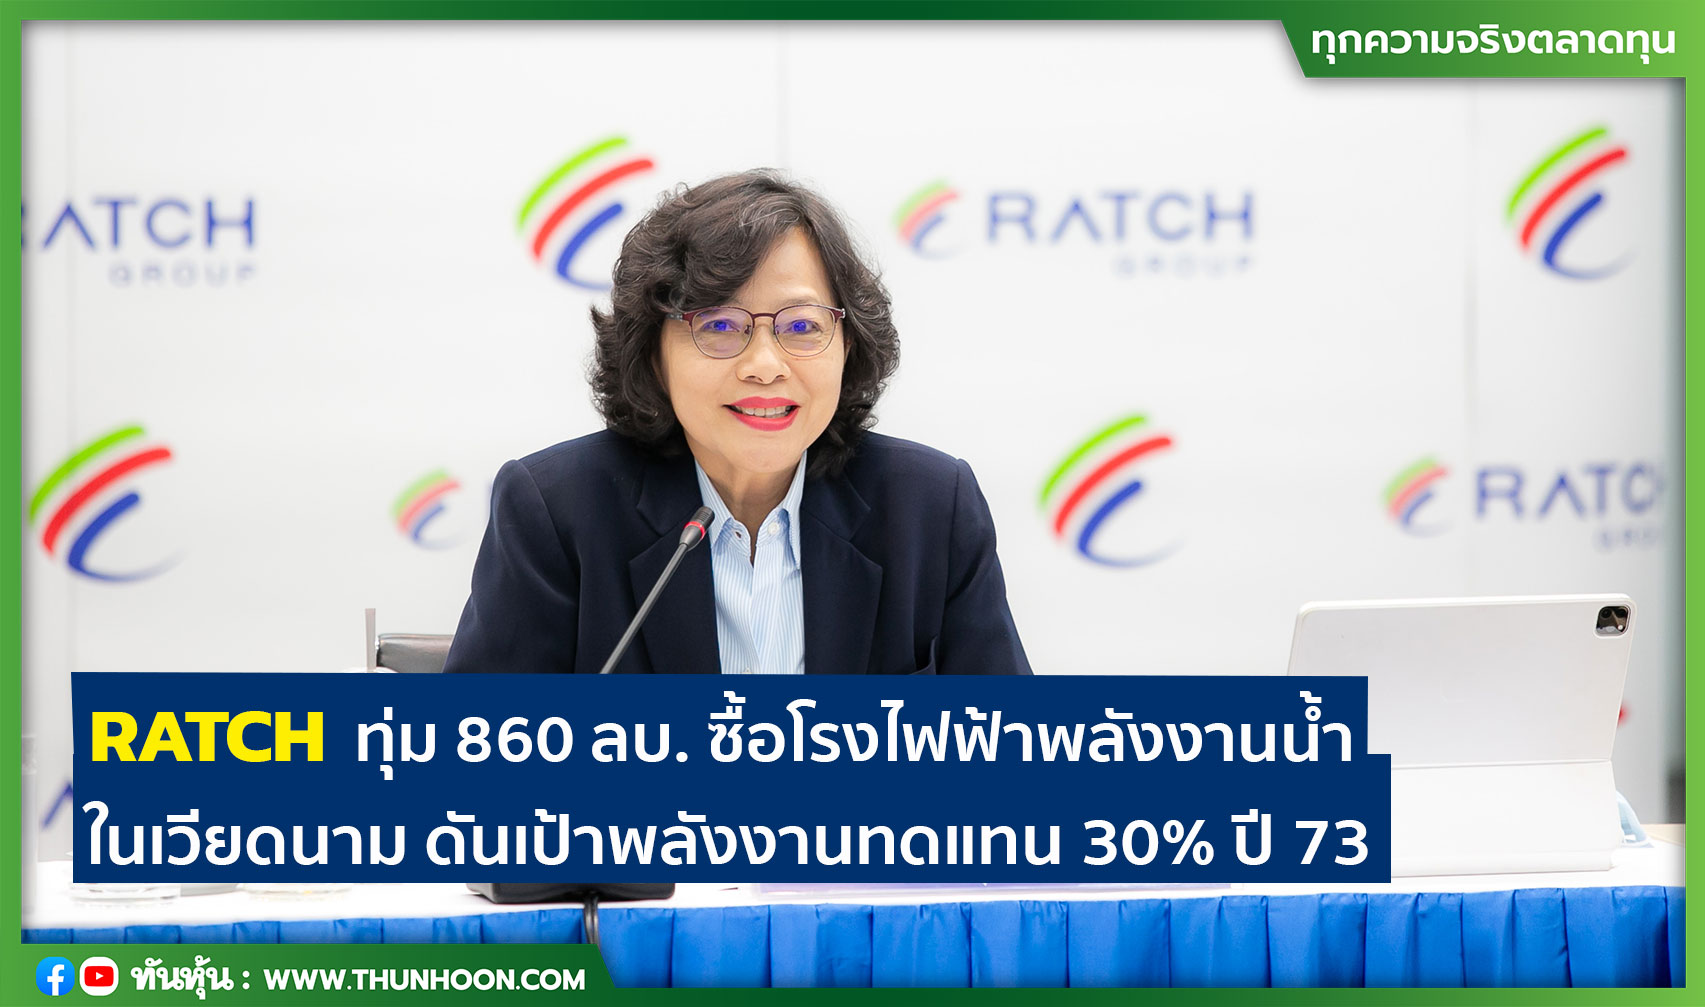 RATCH ทุ่ม 860 ลบ. ซื้อโรงไฟฟ้าพลังงานน้ำในเวียดนาม ดันเป้าพลังงานทดแทน 30% ปี 73